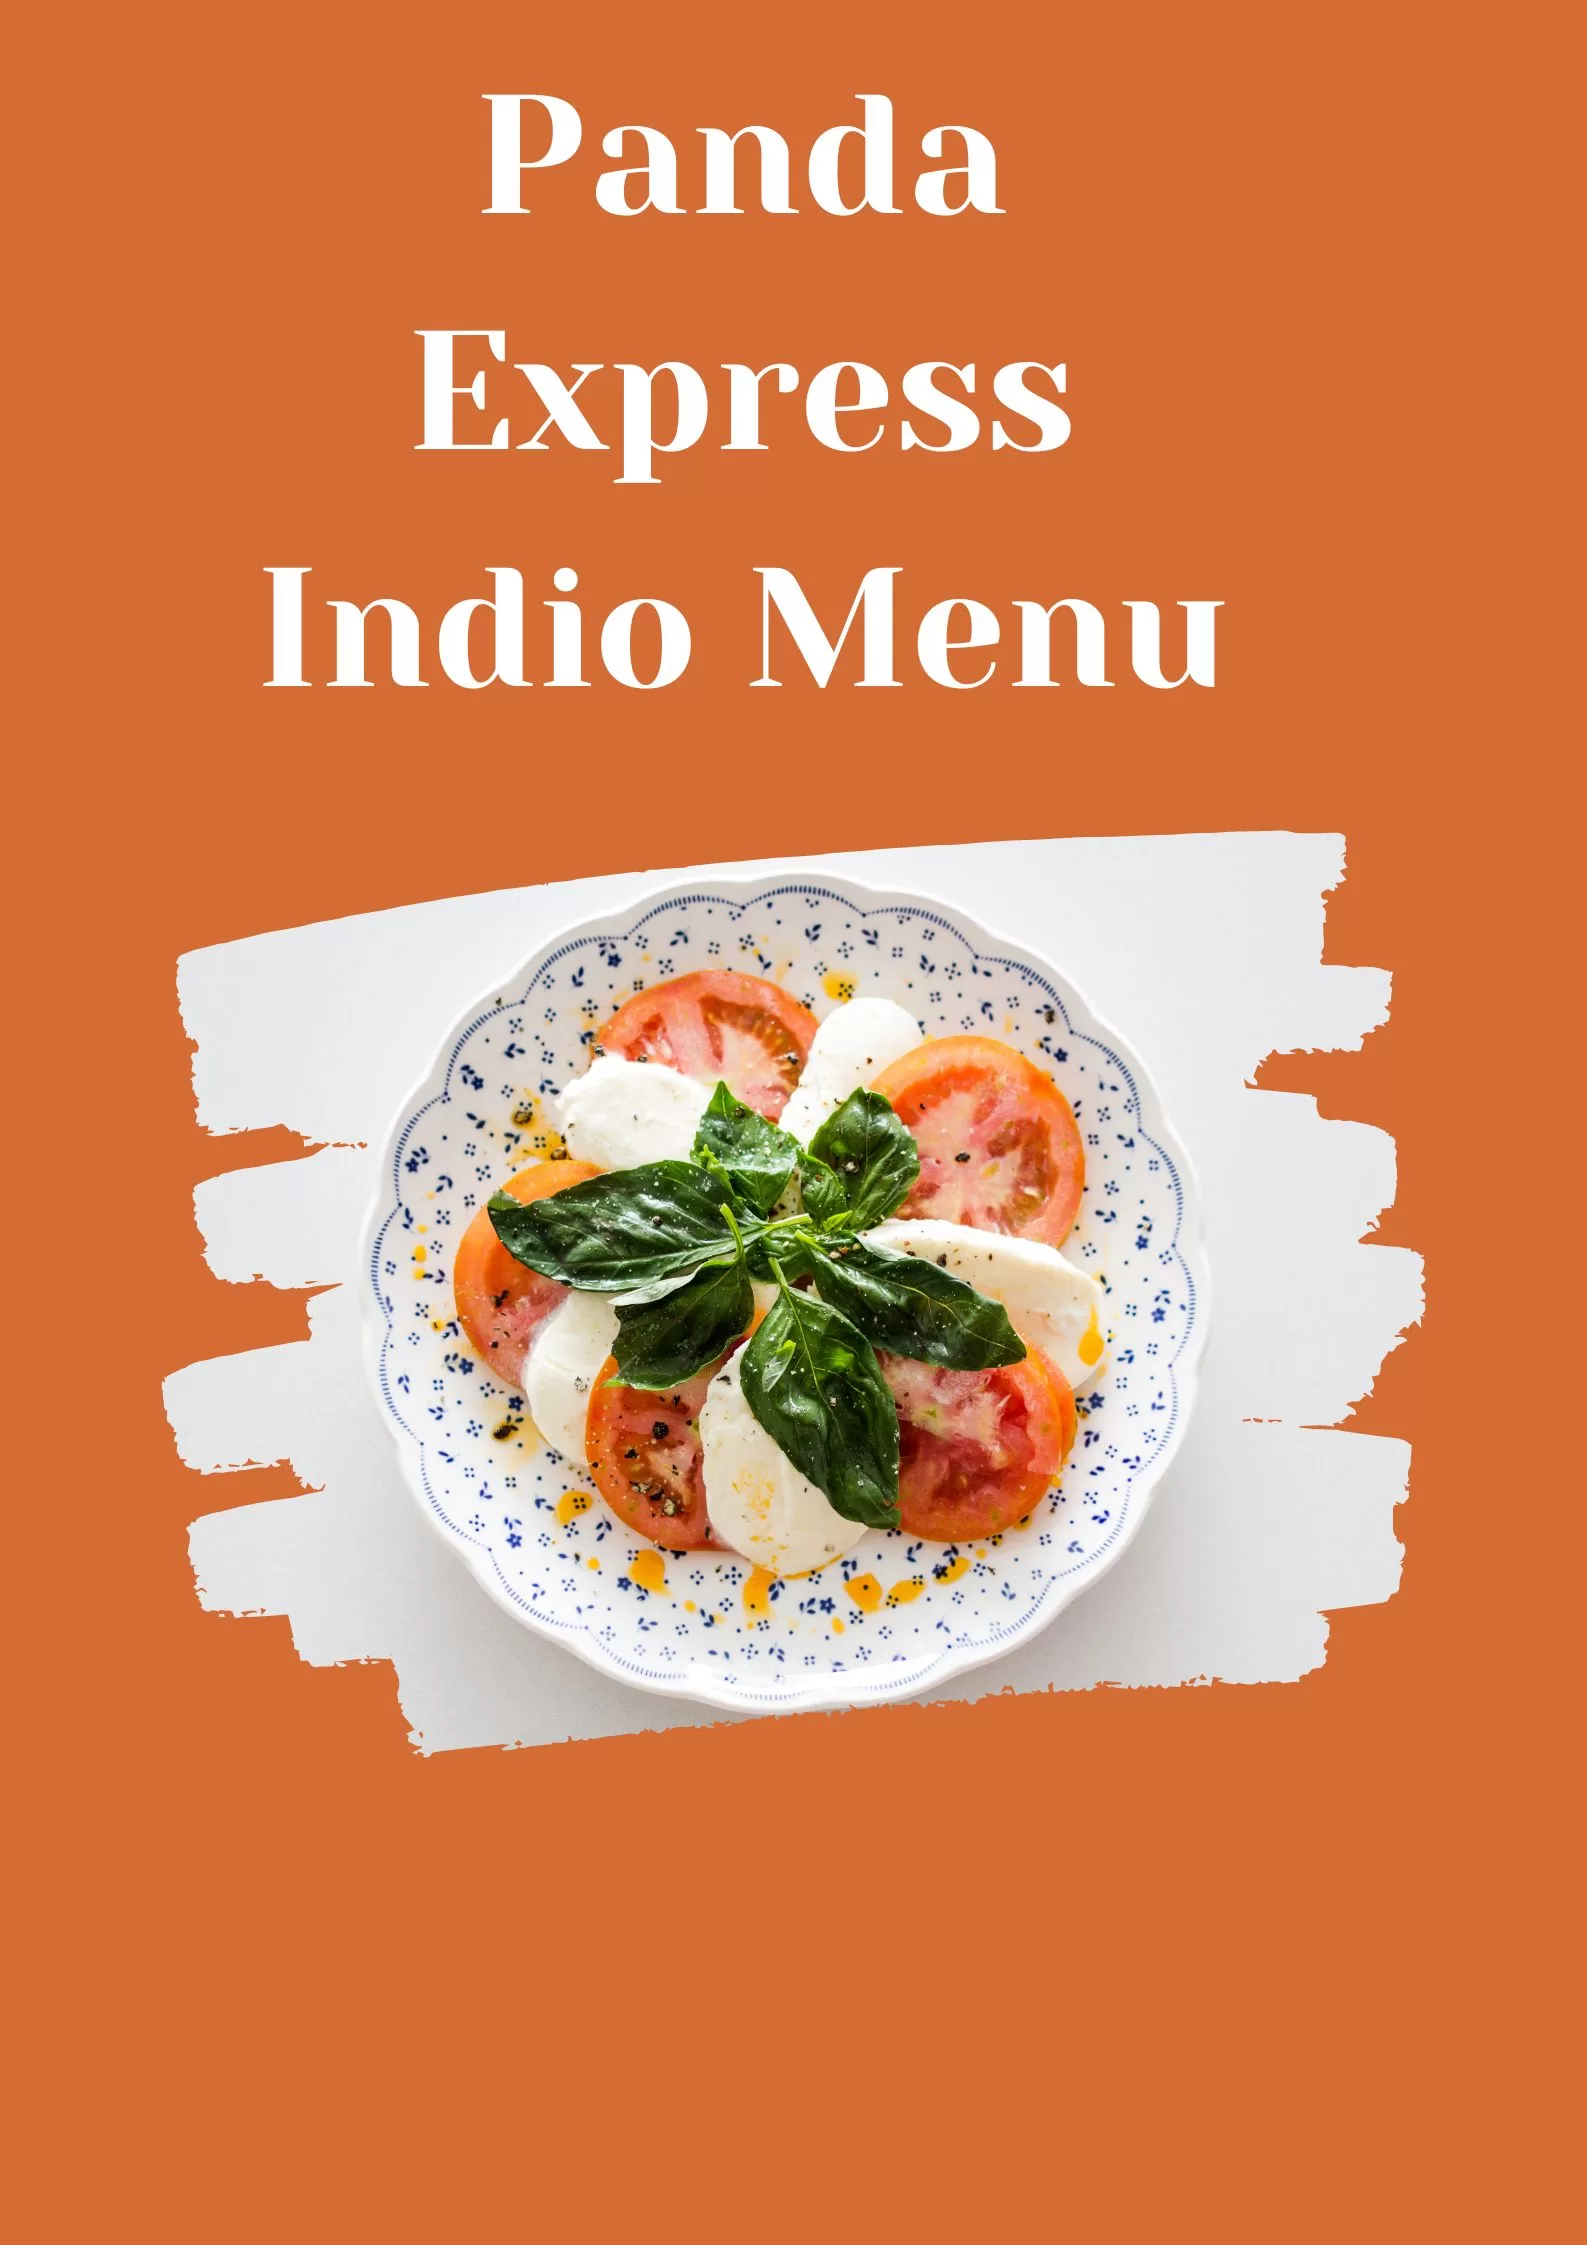 panda express indio menu 